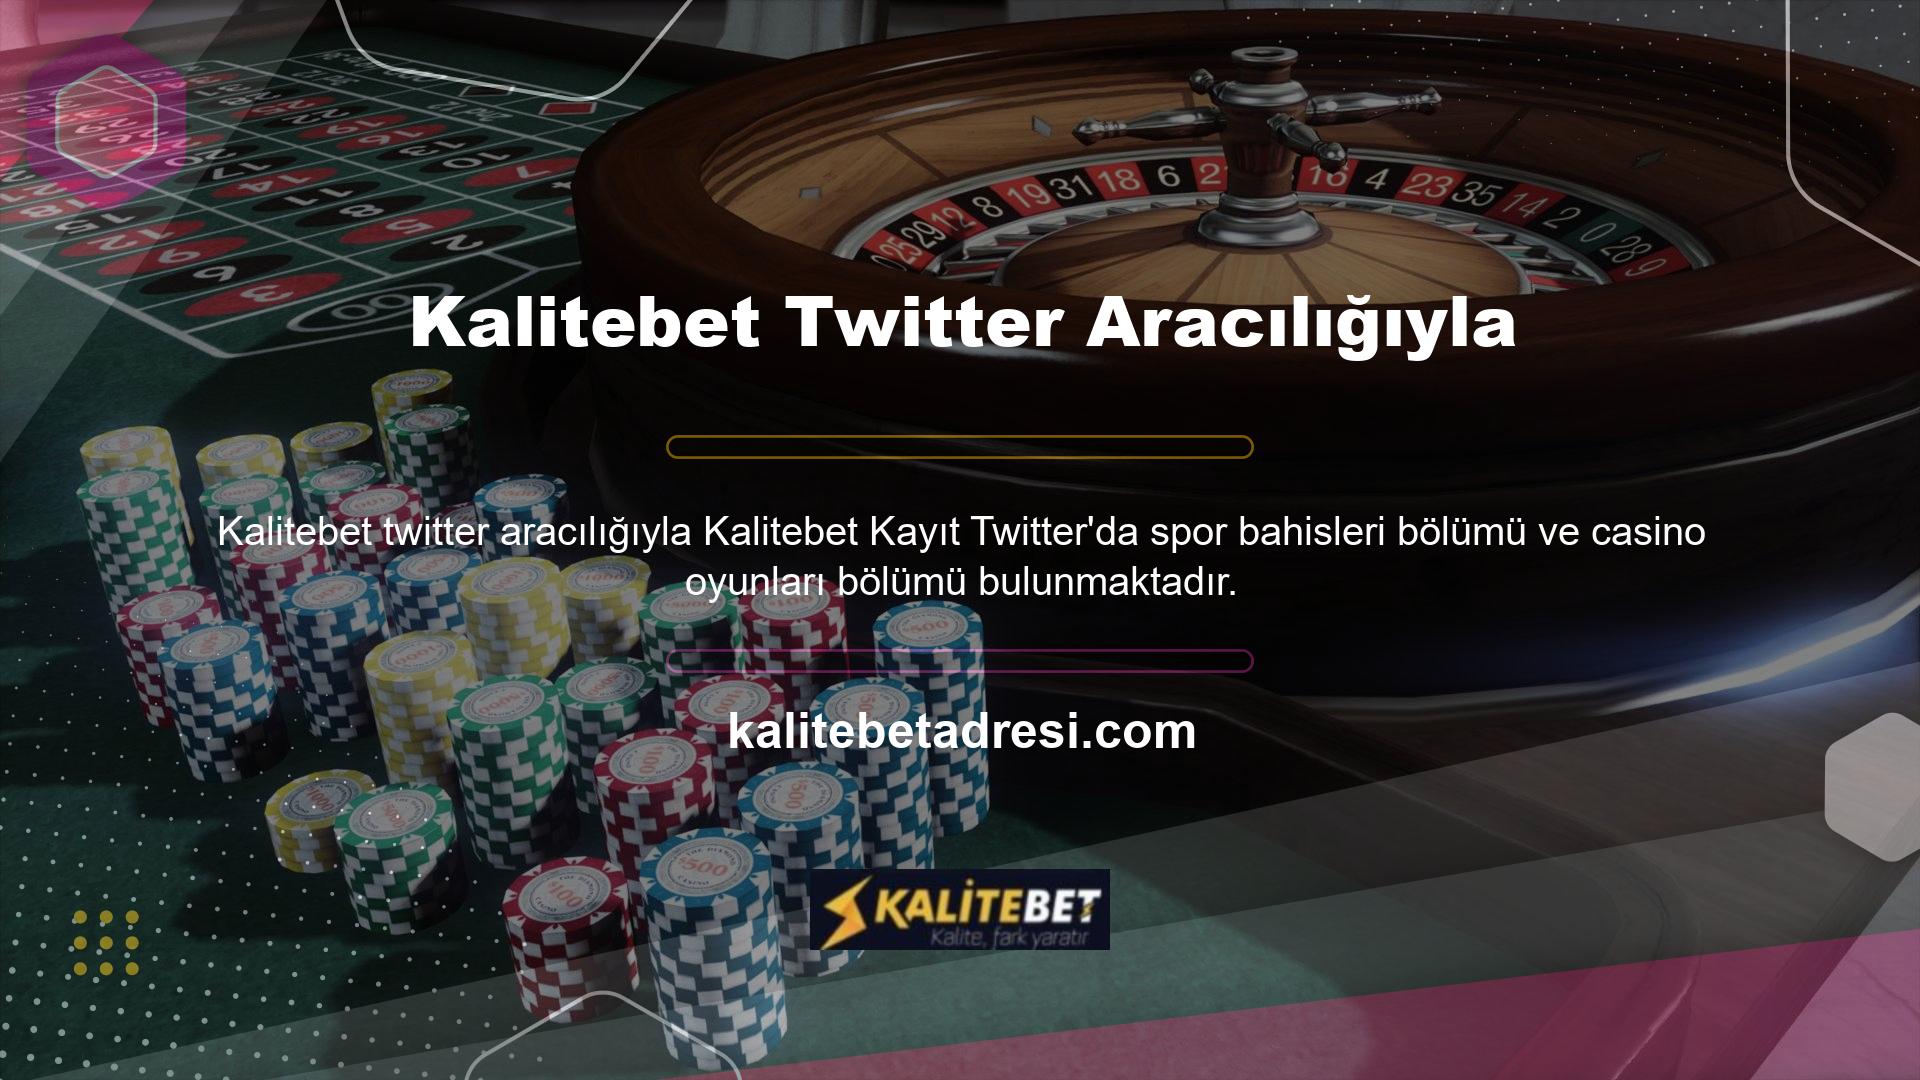 Kalitebet Twitter sitesi İngilizce ve Türkçe dışındaki dilleri de destekleyen çok dilli bir sitedir